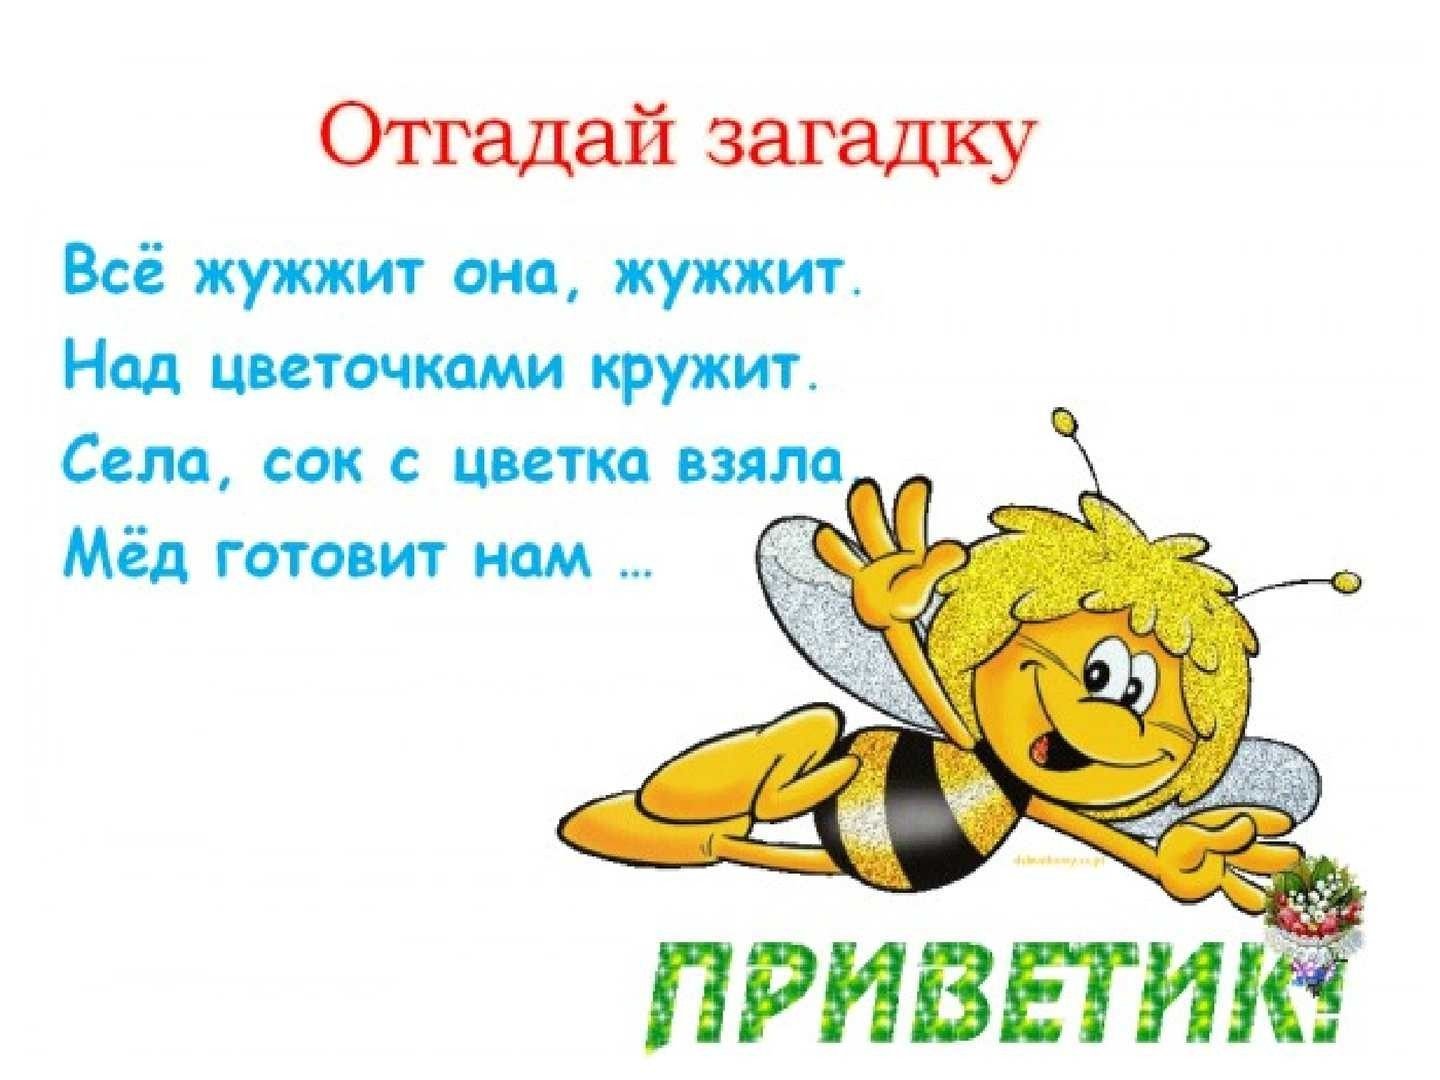 Жужжание как пишется. Загадка про пчелу. Загадка про пчелу для детей. Стих про пчелу. Детские загадки про пчел.